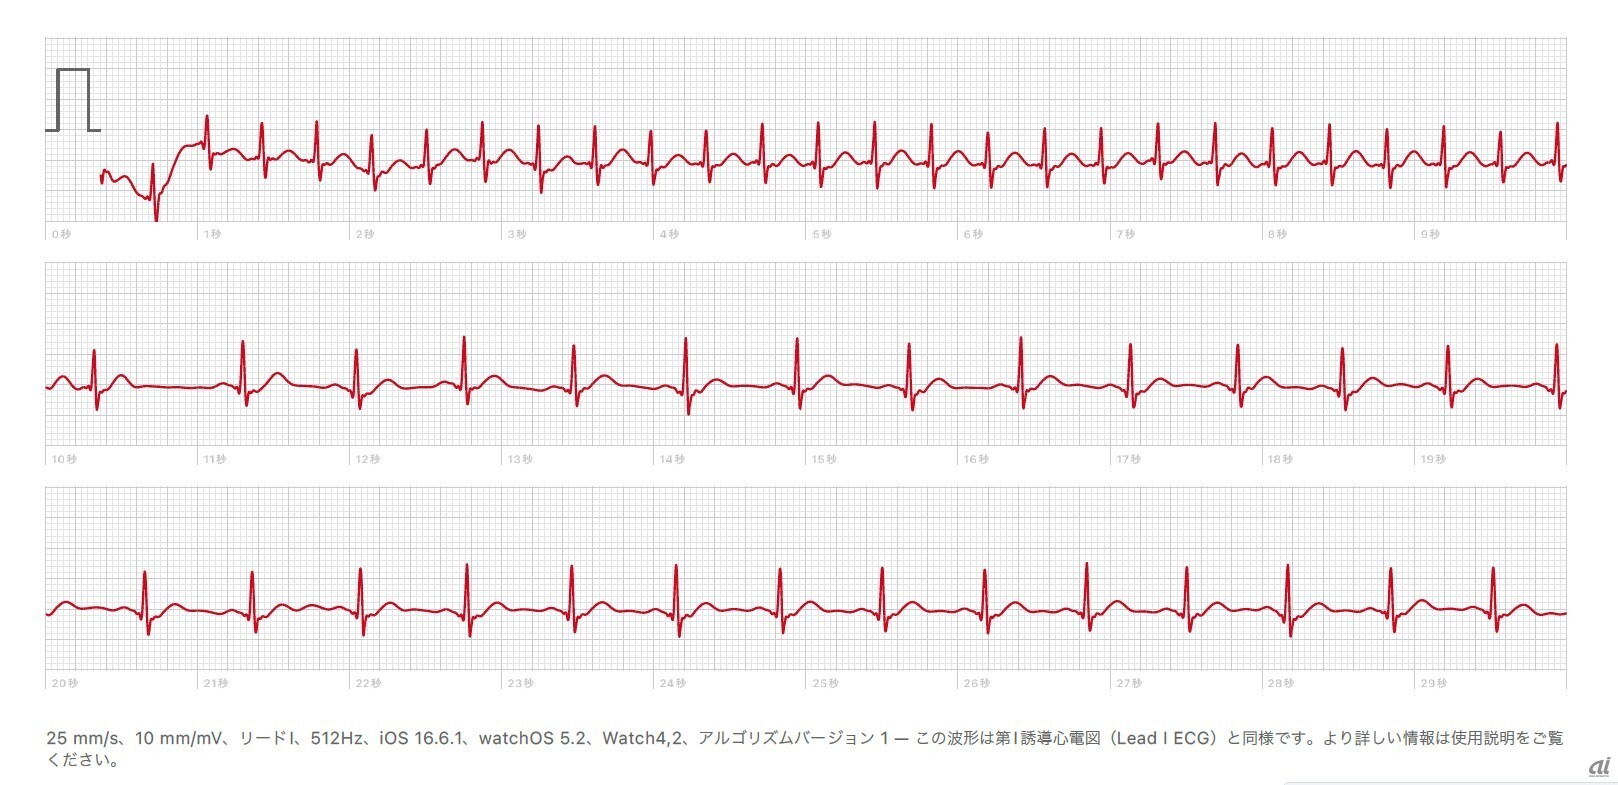 飯村氏のApple Watchで記録された、上室性頻拍の心電図。心拍数が200回／分ぐらいまで早かったところ（上段）から、100以下に落ちたところが記録されている